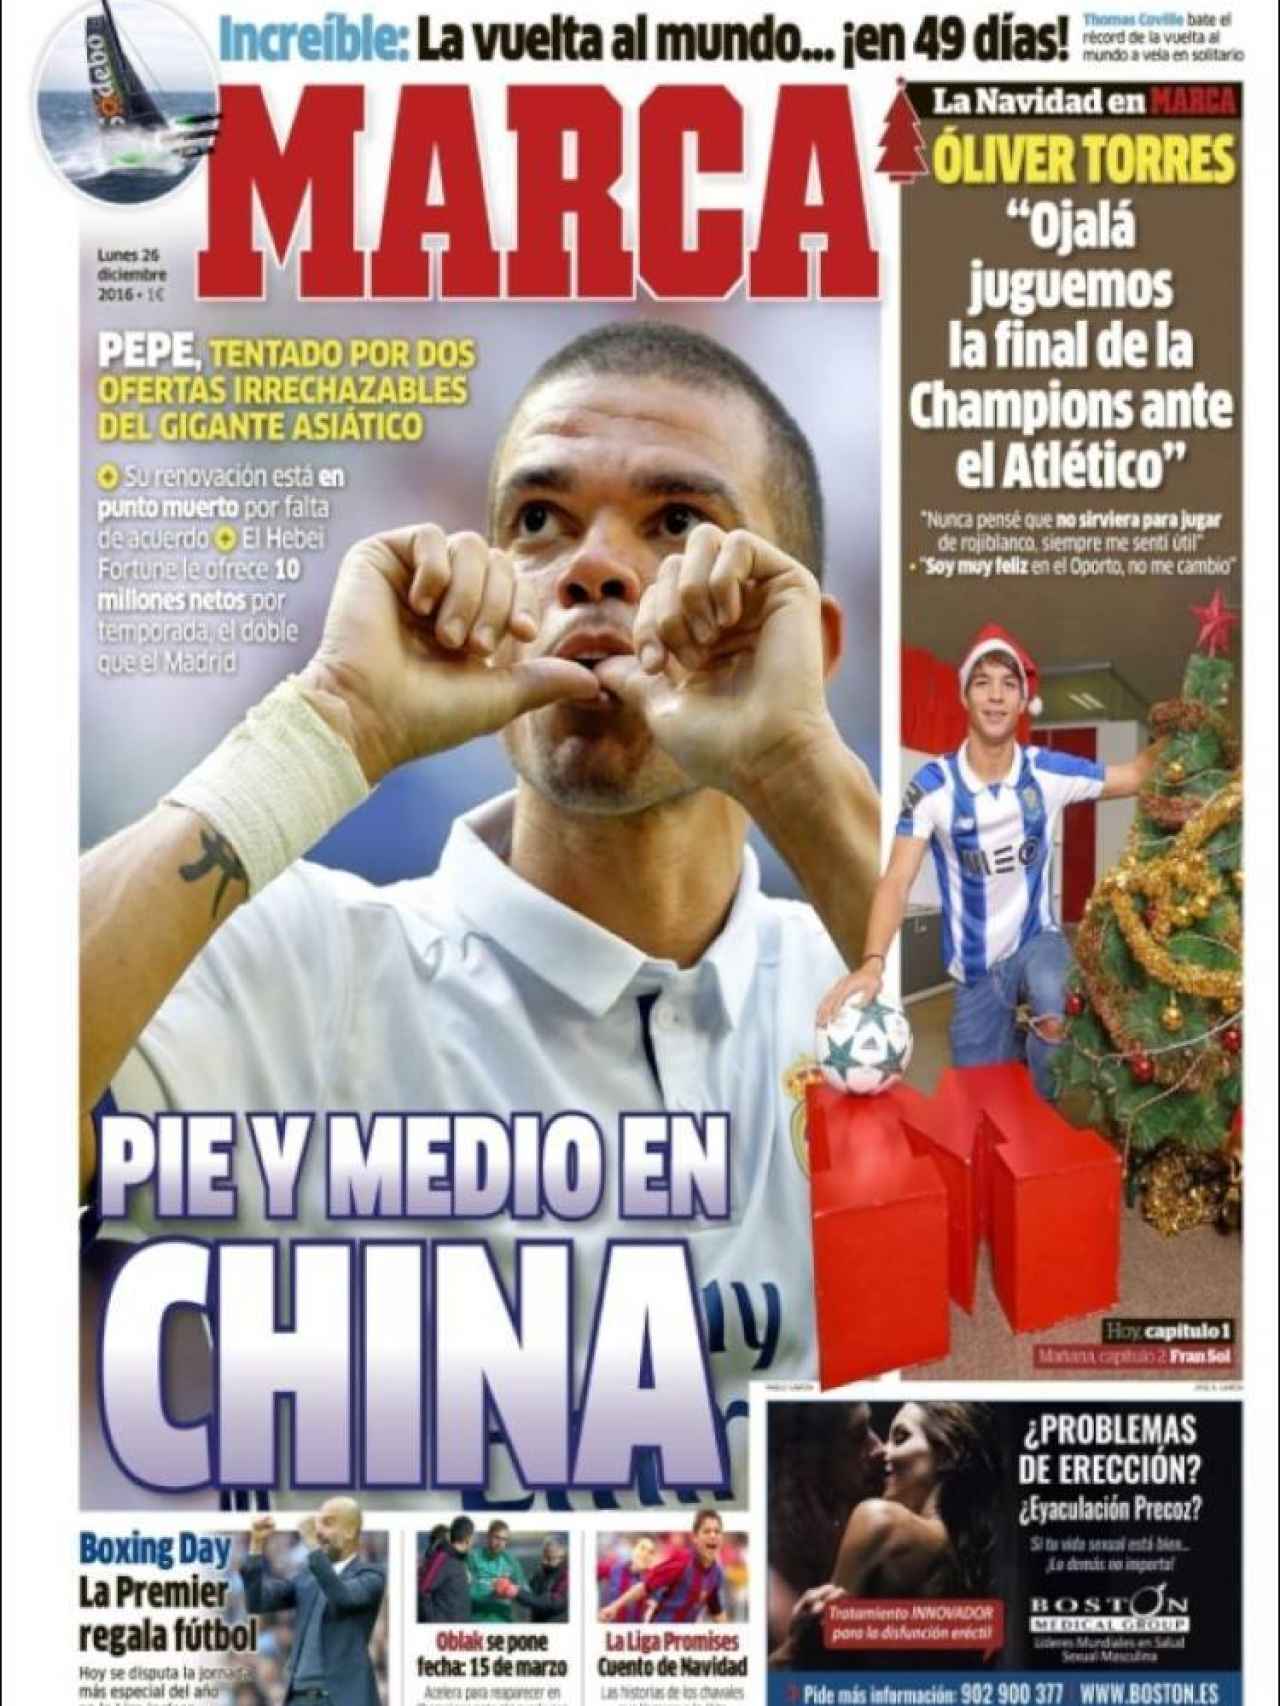 Ofertón del fútbol chino a Pepe, que acaba contrato en junio de 2017 con el Real Madrid. Así abre MARCA.